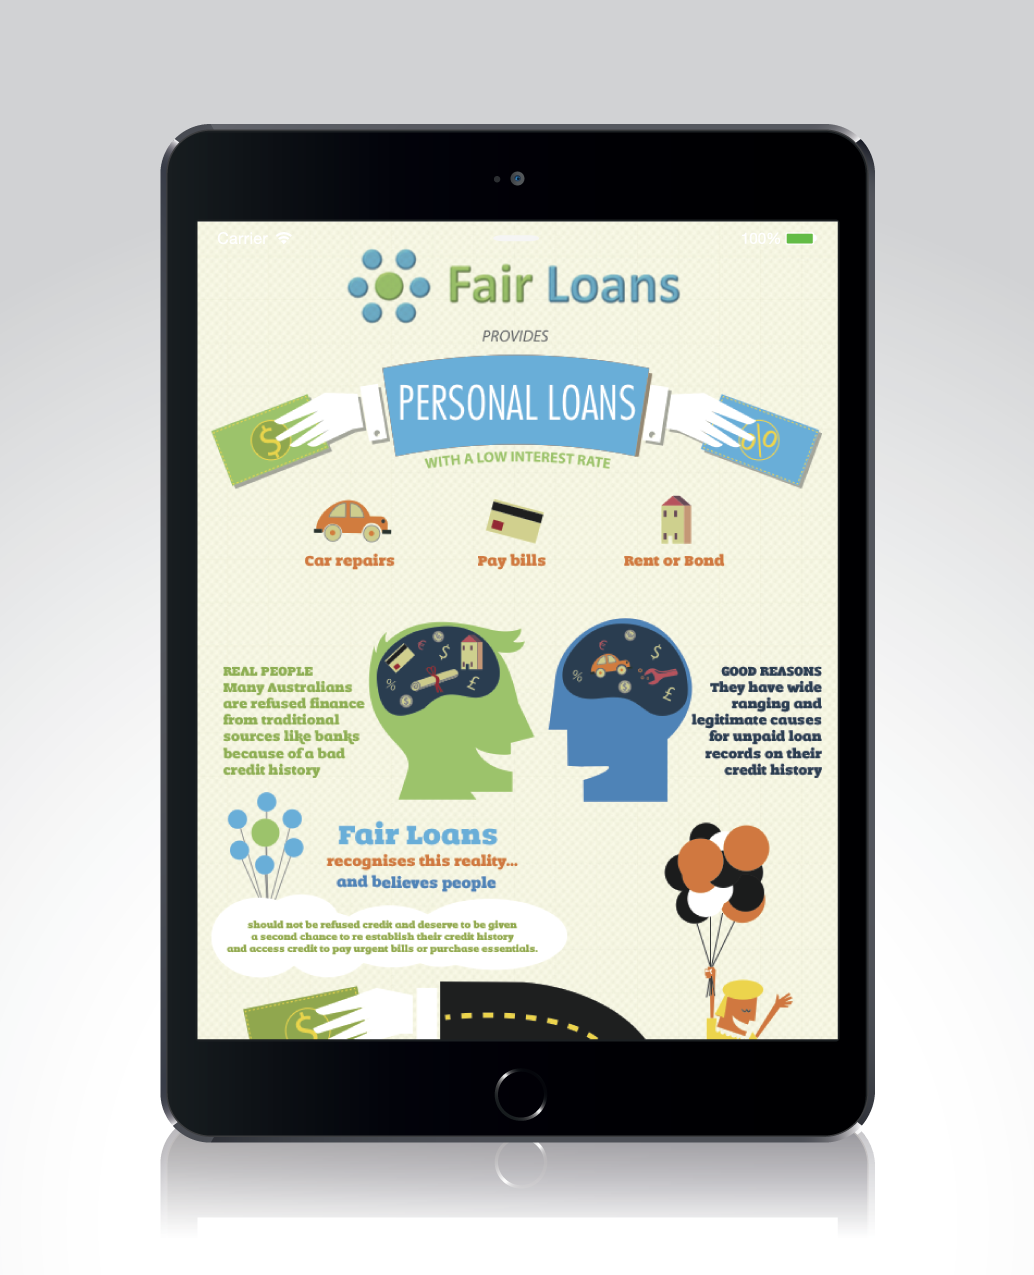 Fair Loans